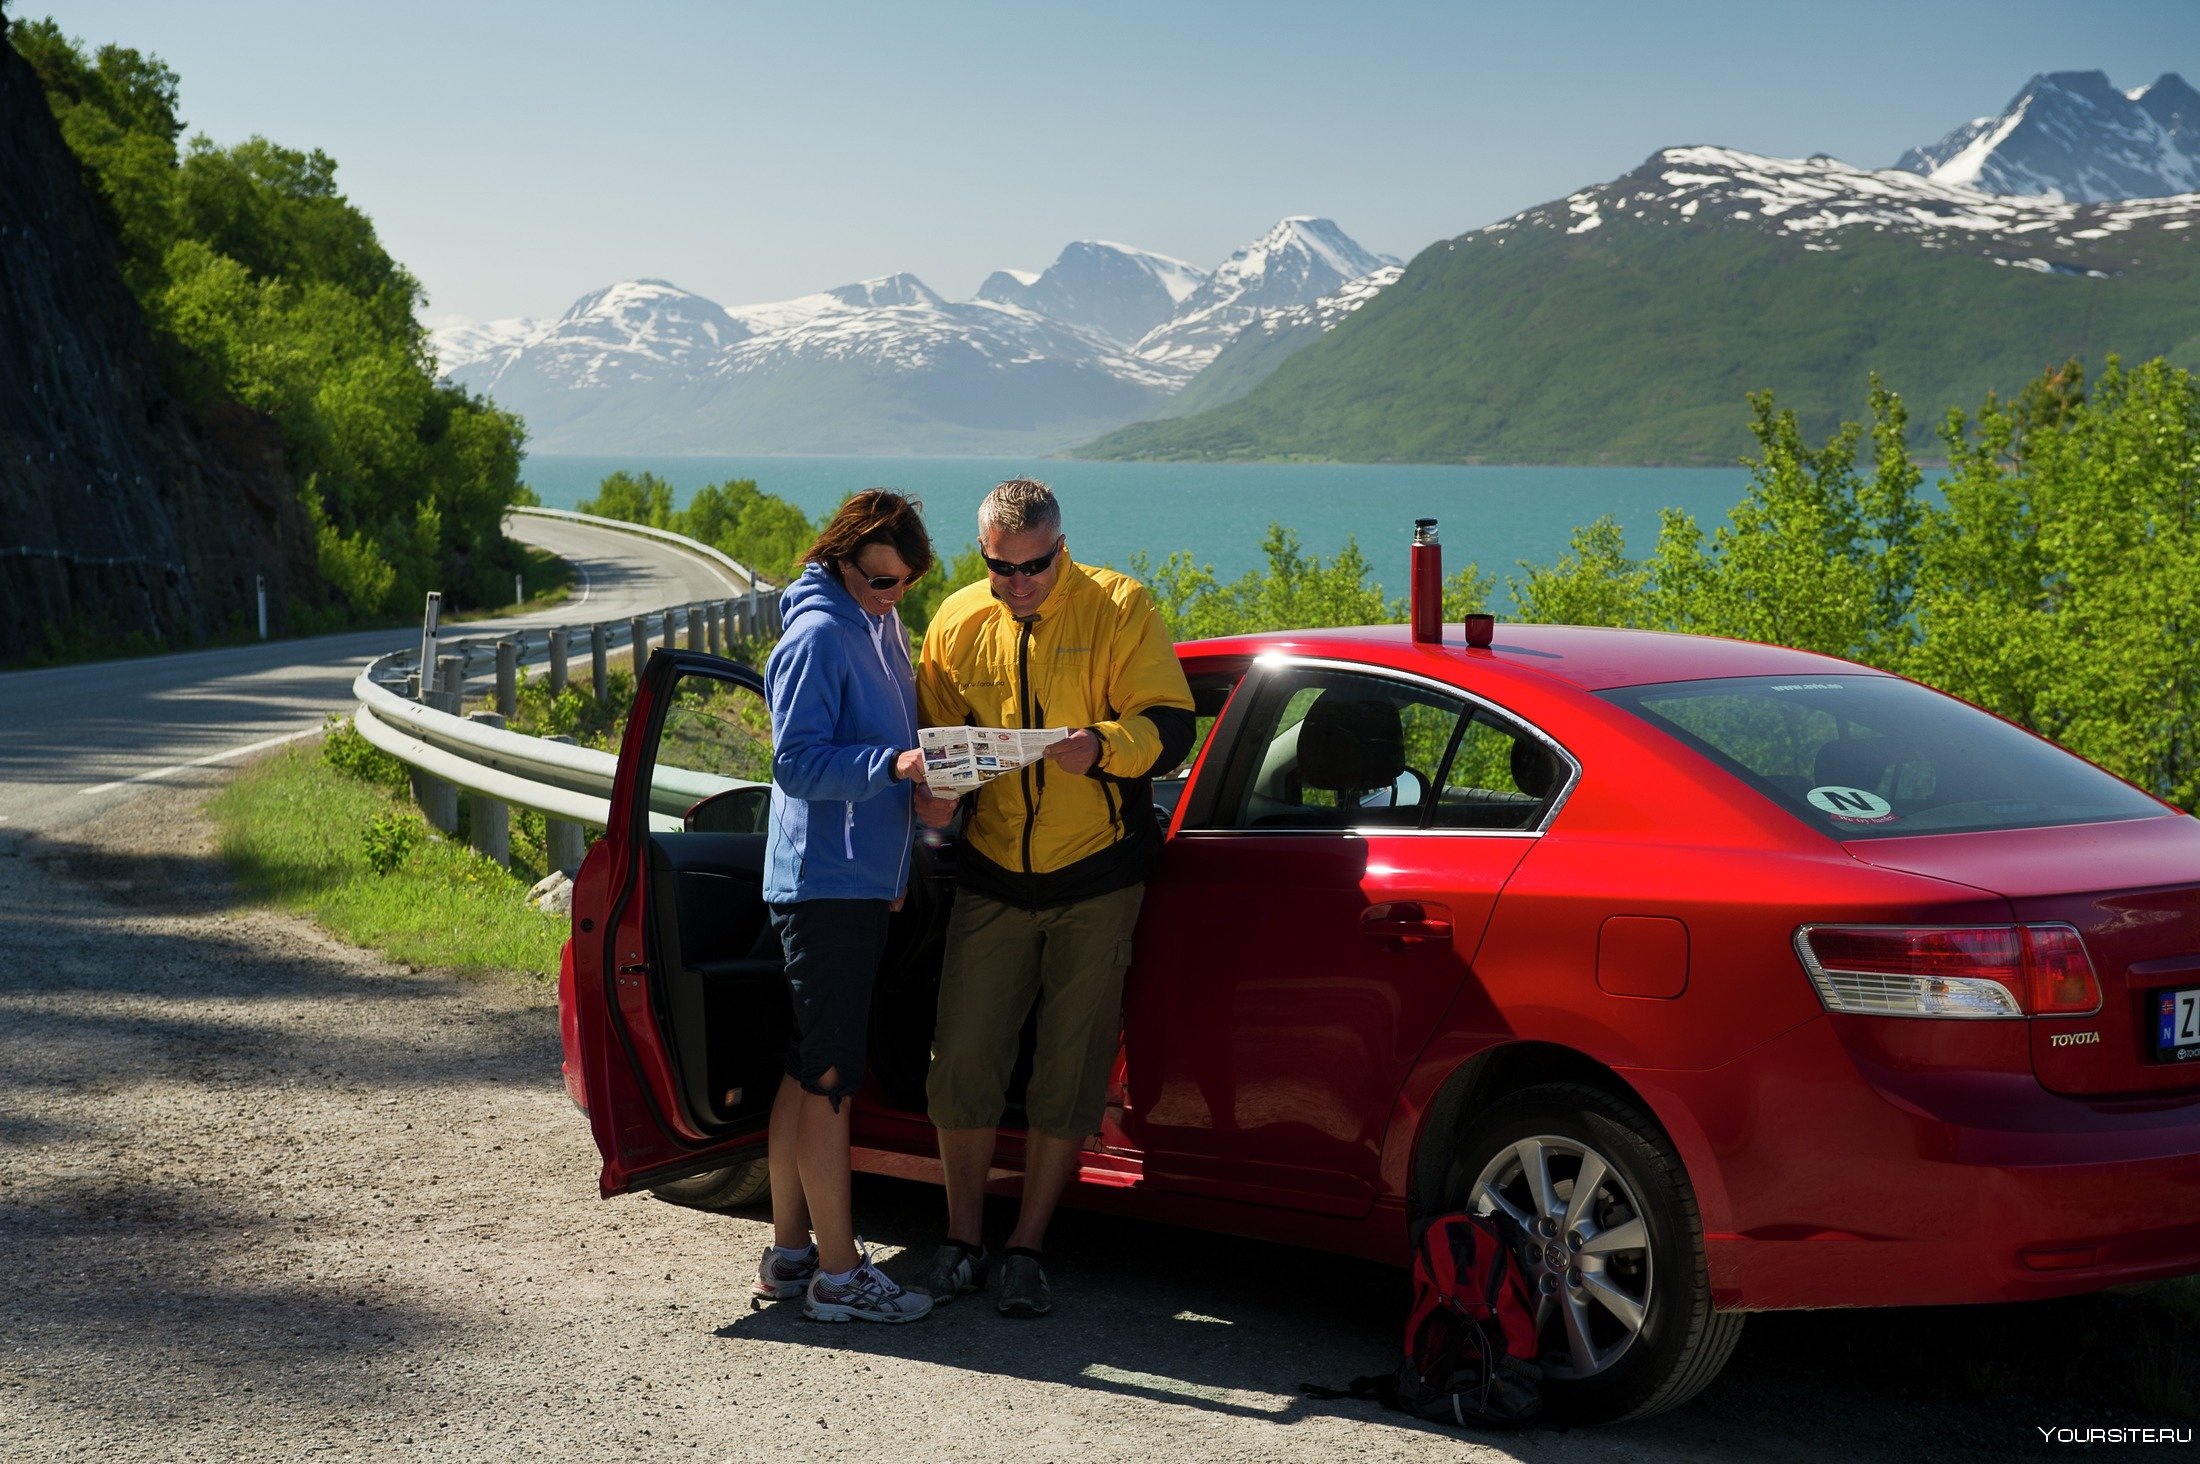 Авто для личных целей. Путешествие на машине. Авто для путешествий. Машины в Норвегии. Путешествовать на автомобиле.